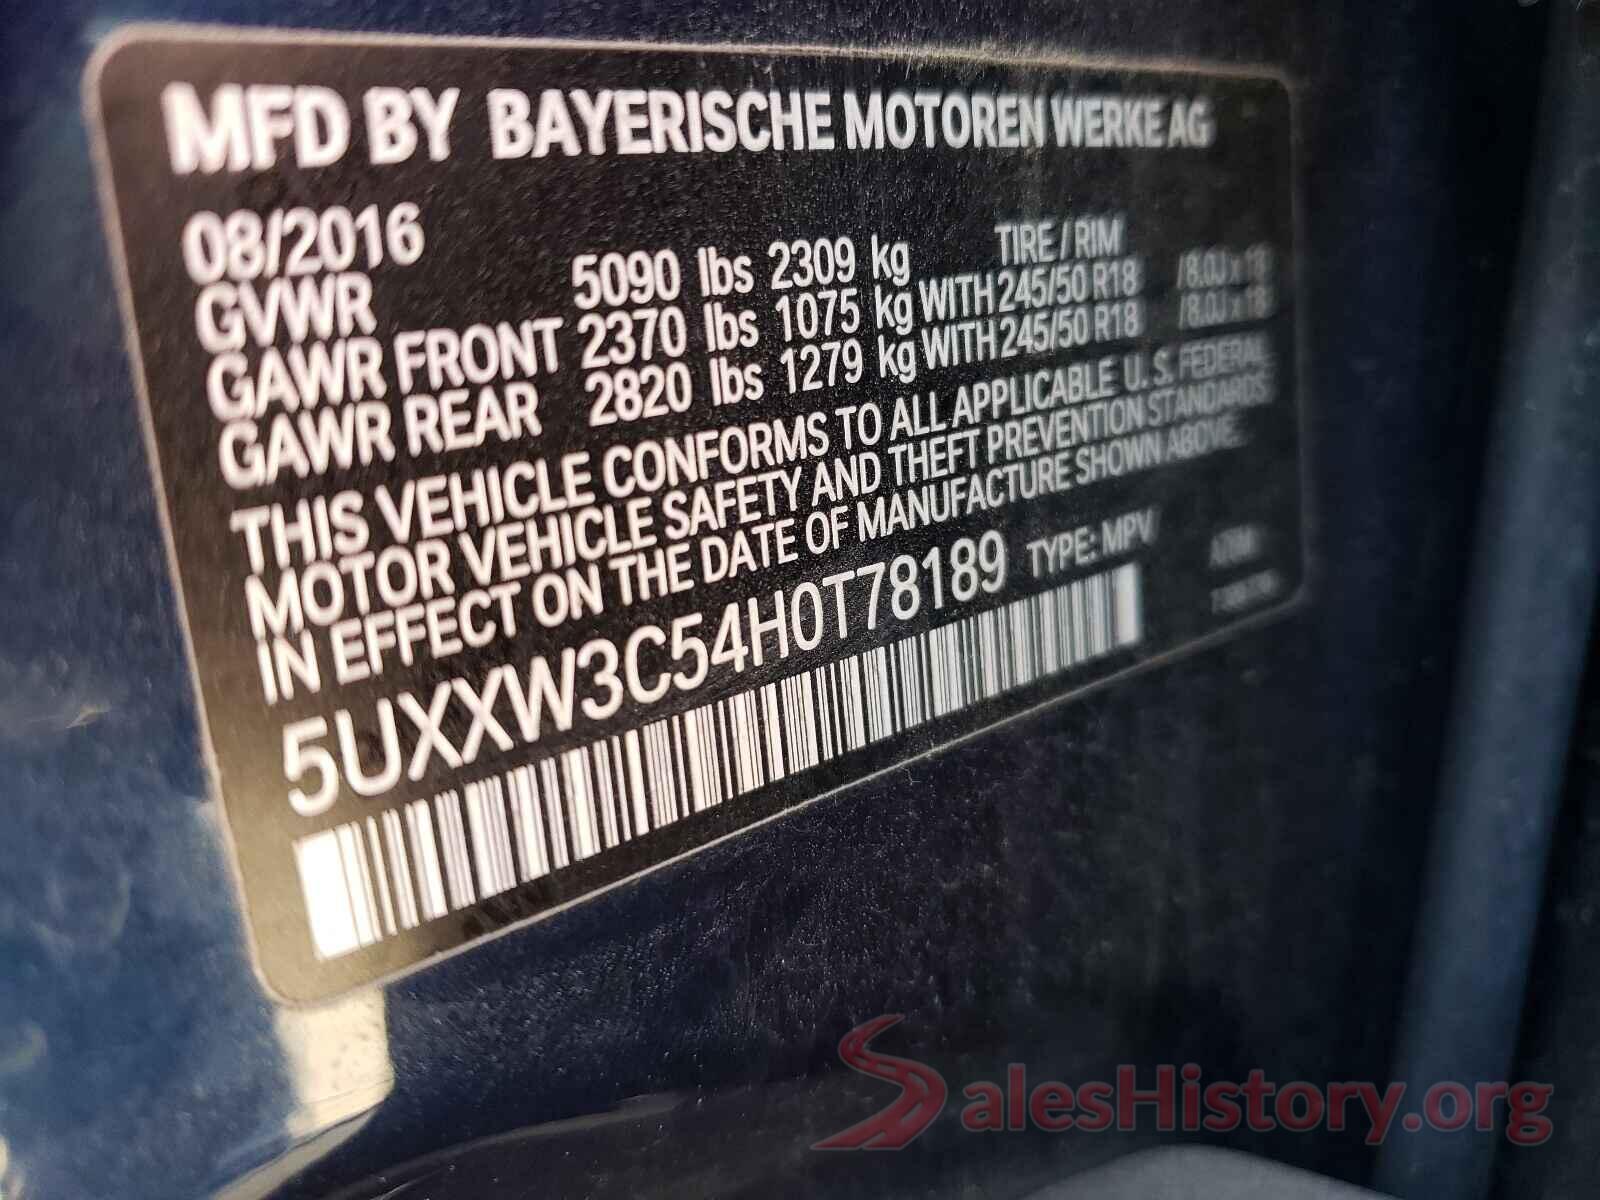 5UXXW3C54H0T78189 2017 BMW X4